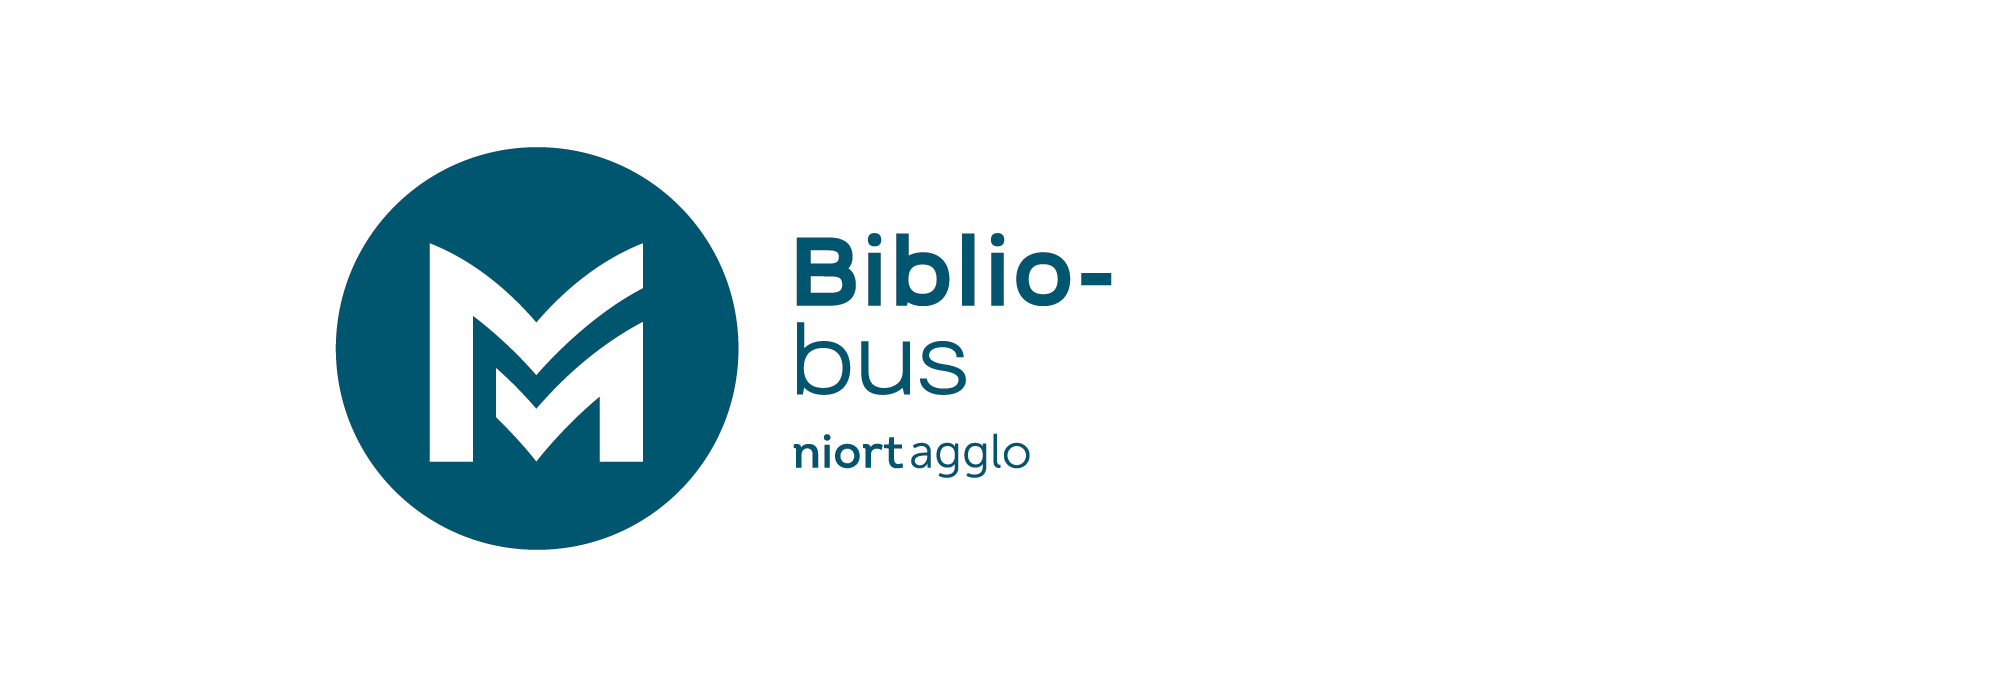 Logo du Bibliobus